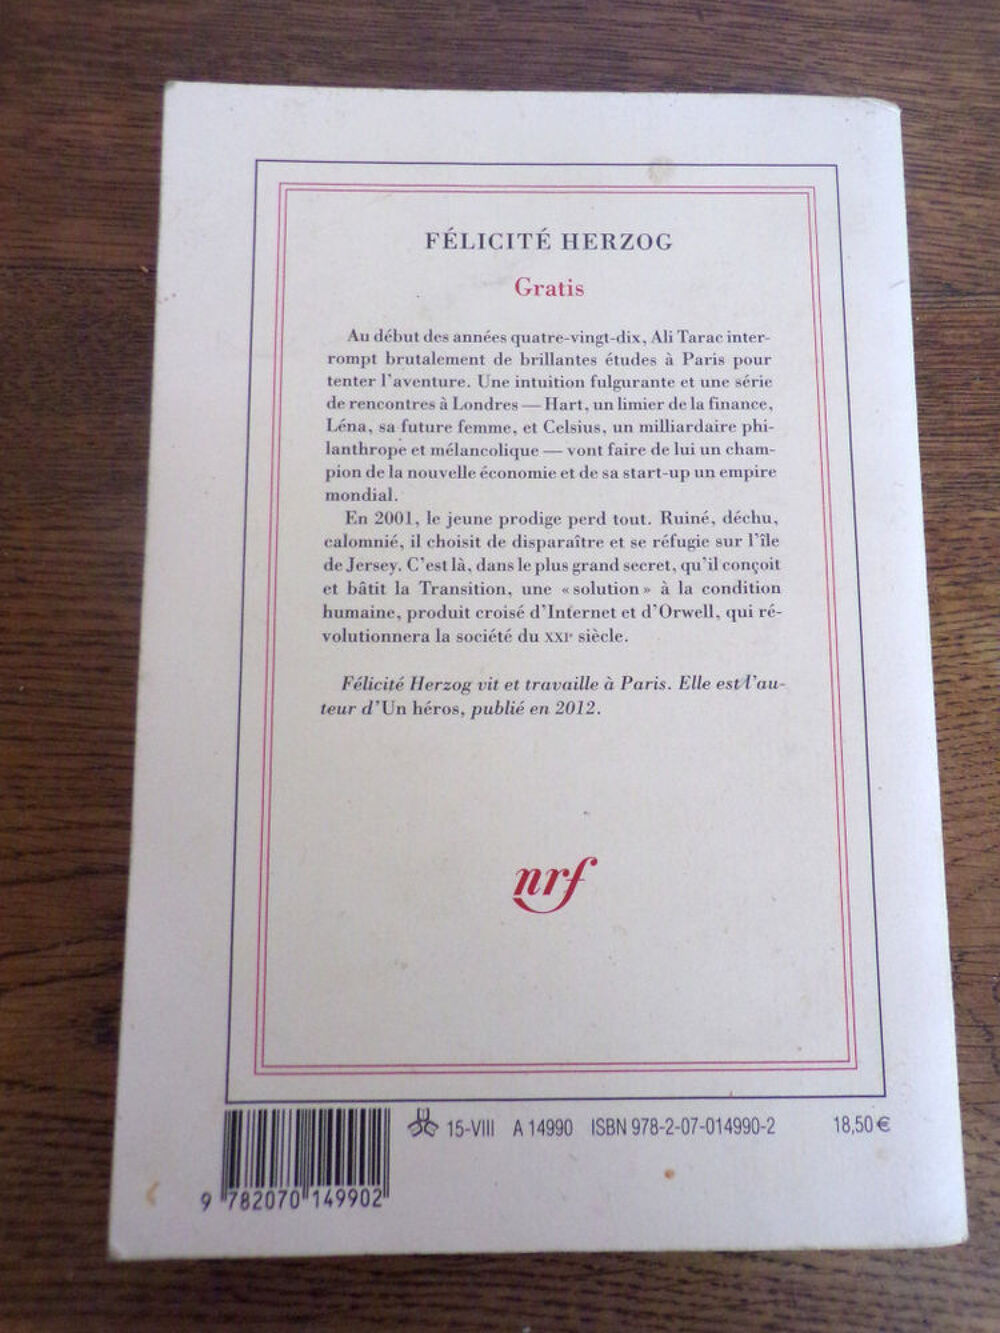 Gratis F&eacute;licit&eacute; Herzog &eacute;ditions Gallimard nrf 2015 243 pages Livres et BD